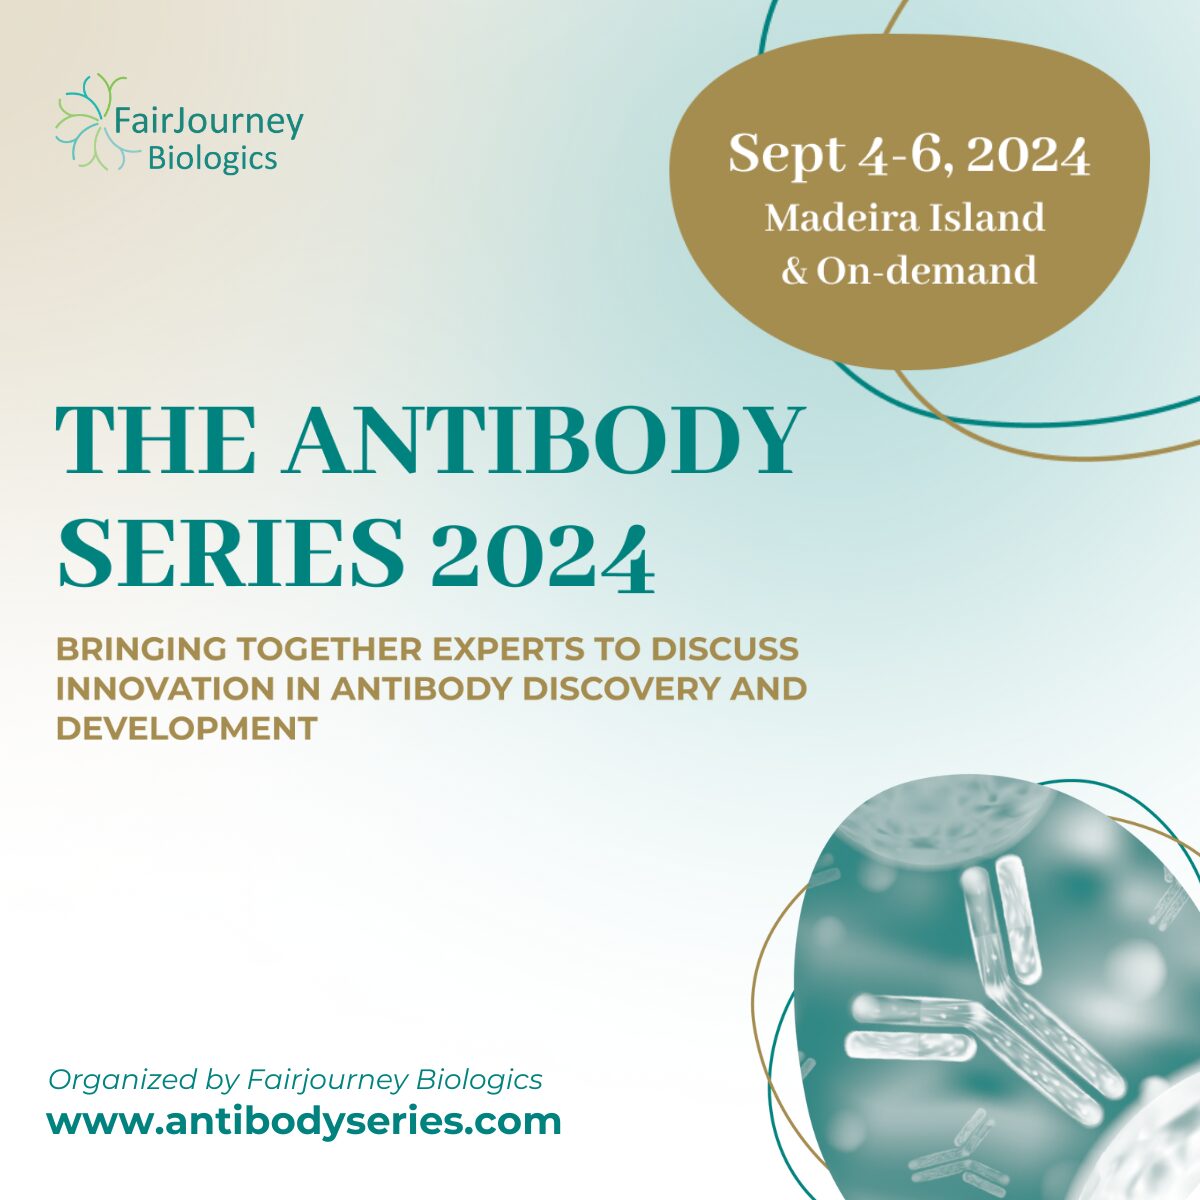 The Antibody Series 2024